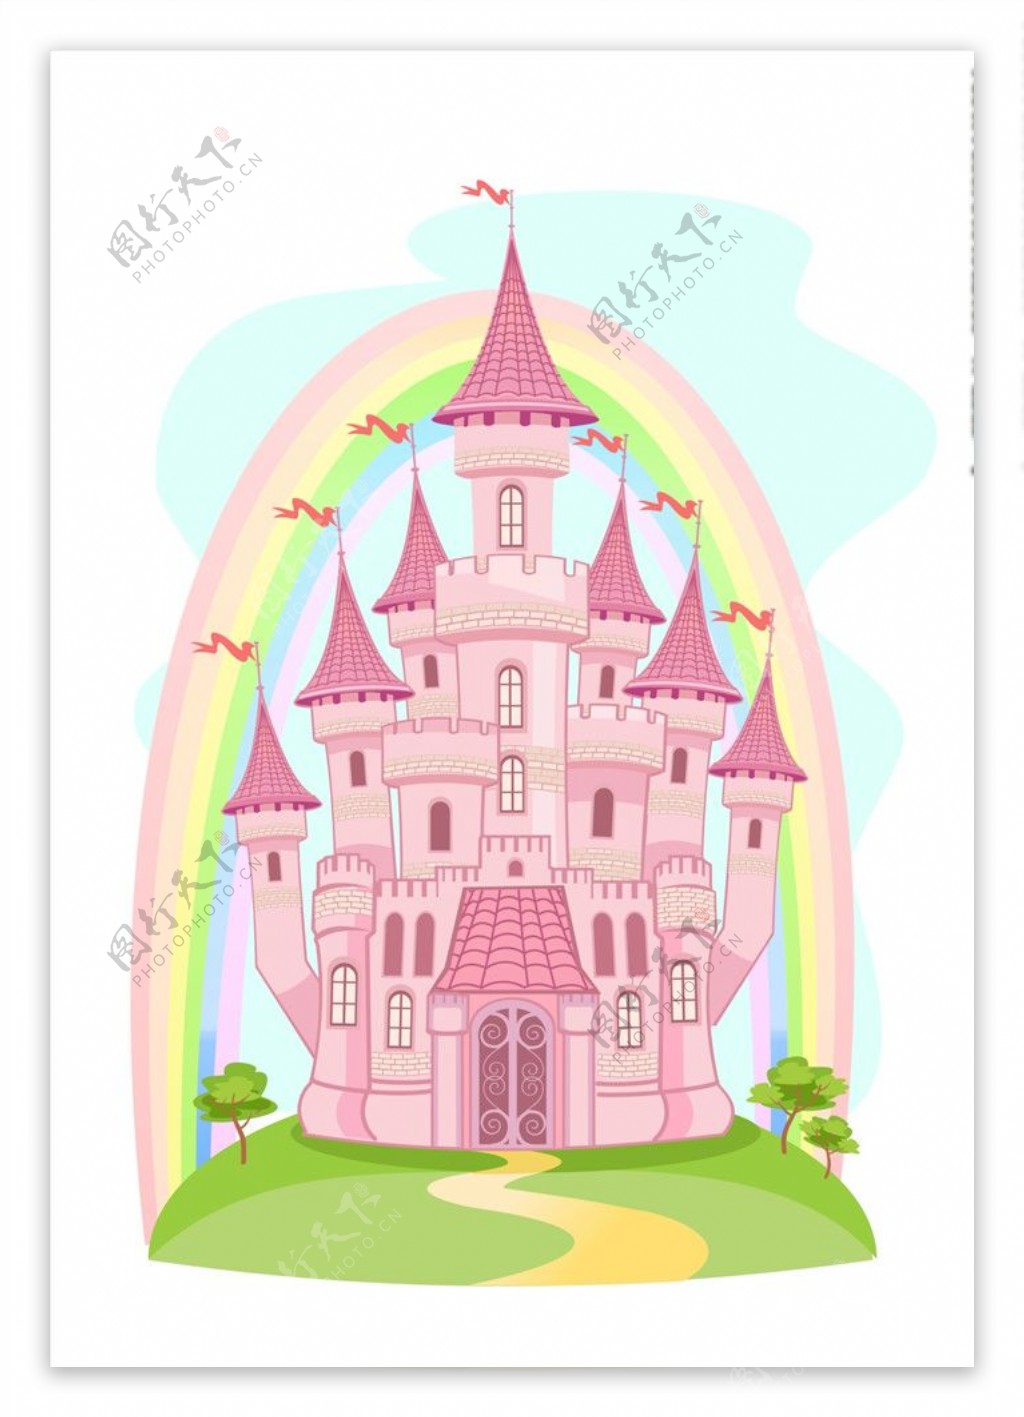 彩虹城堡矢量图下载